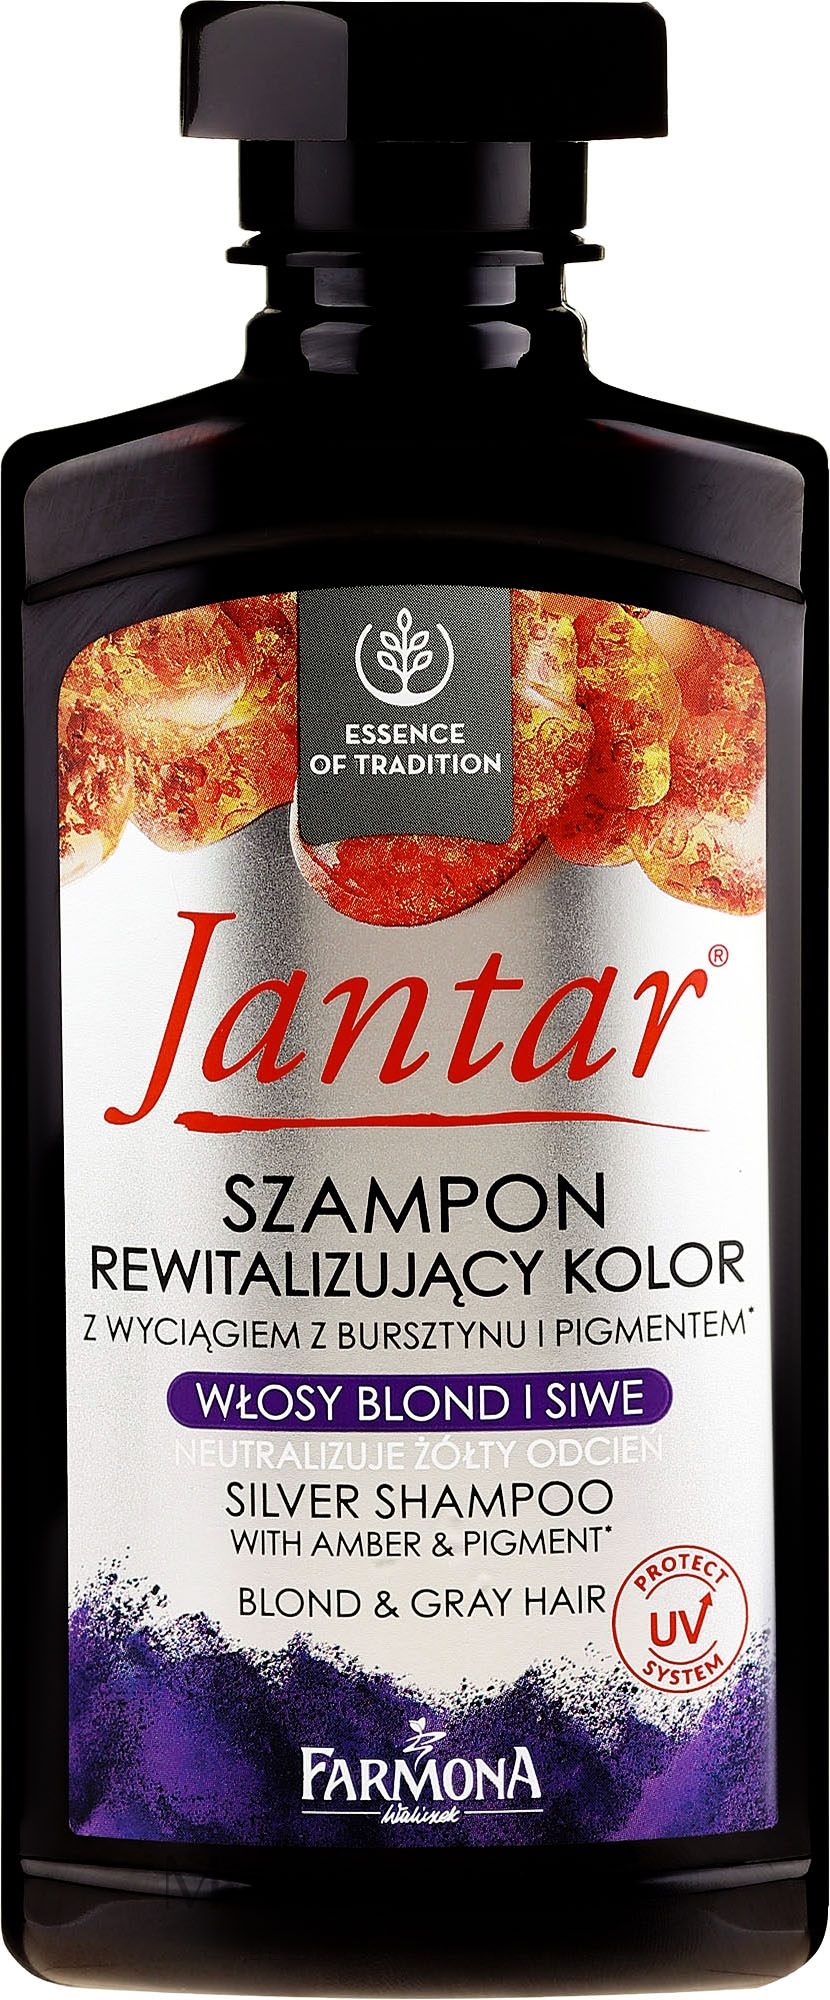 jantar szampon z minerałami